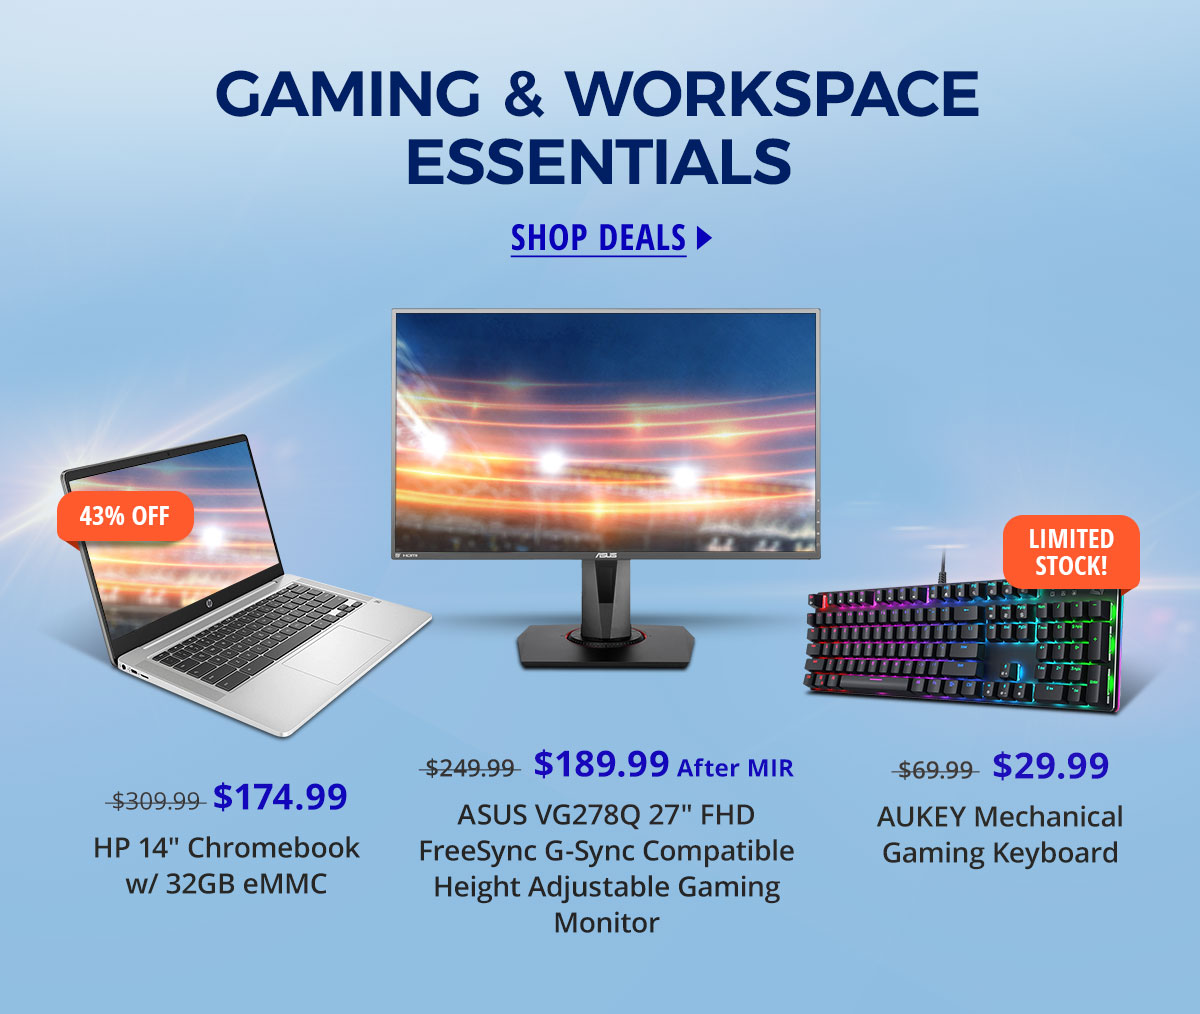 Gaming & Workspace Essentials